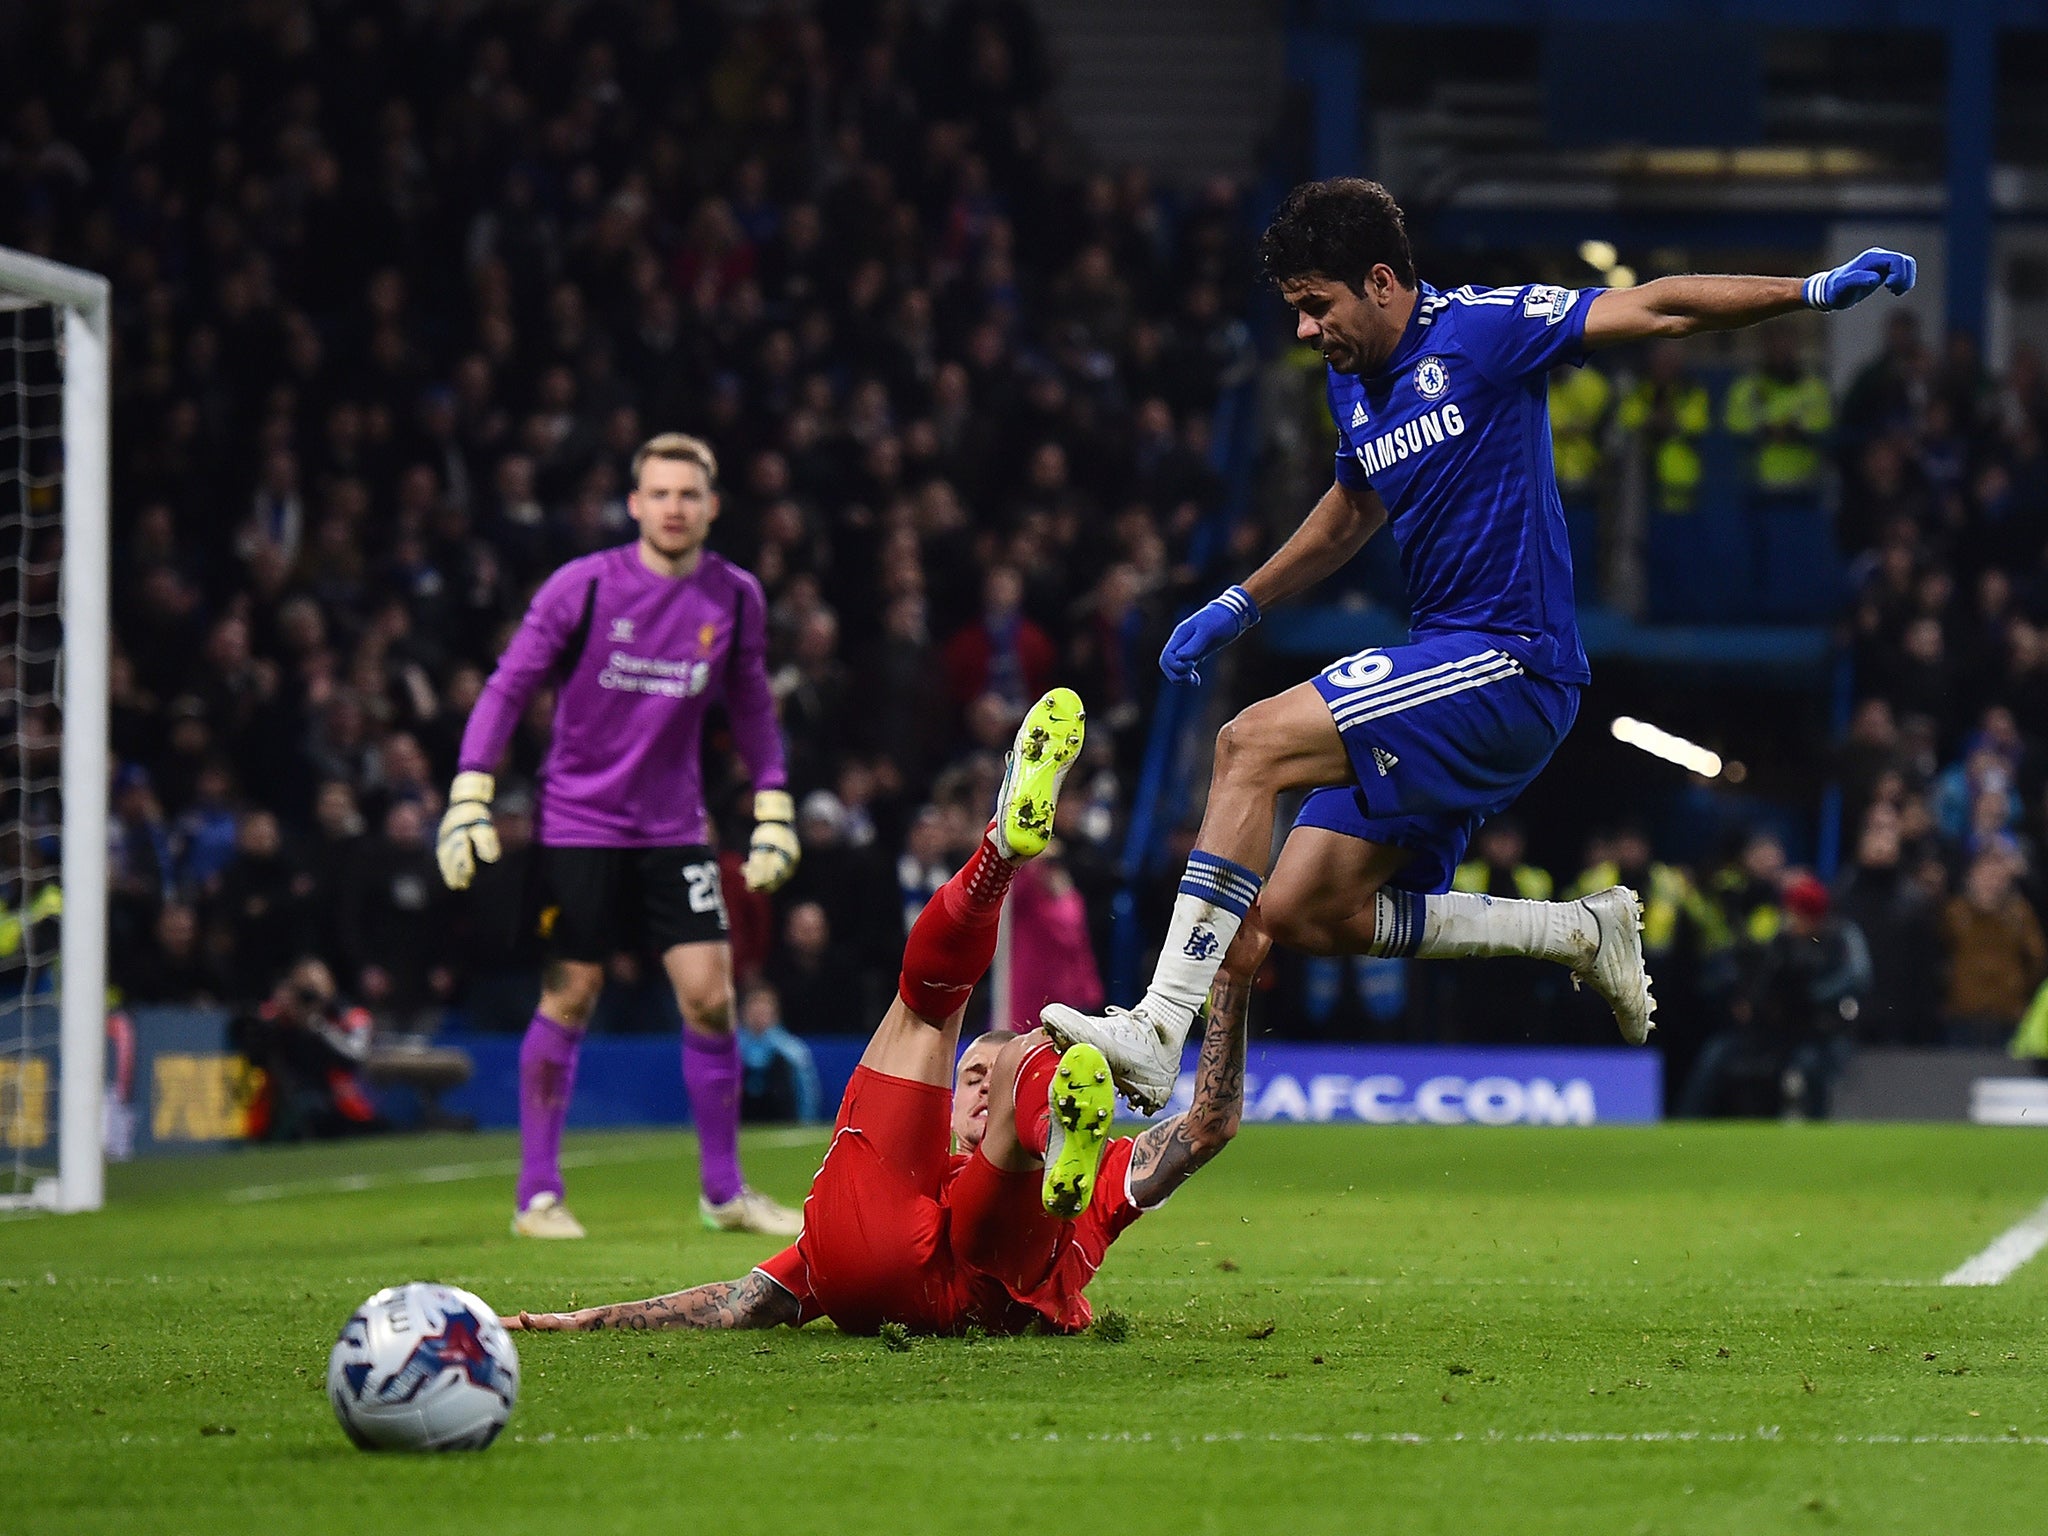 Chelsea striker Diego Costa clashes with Liverpool's Martin Skrtel at Stamford Bridge